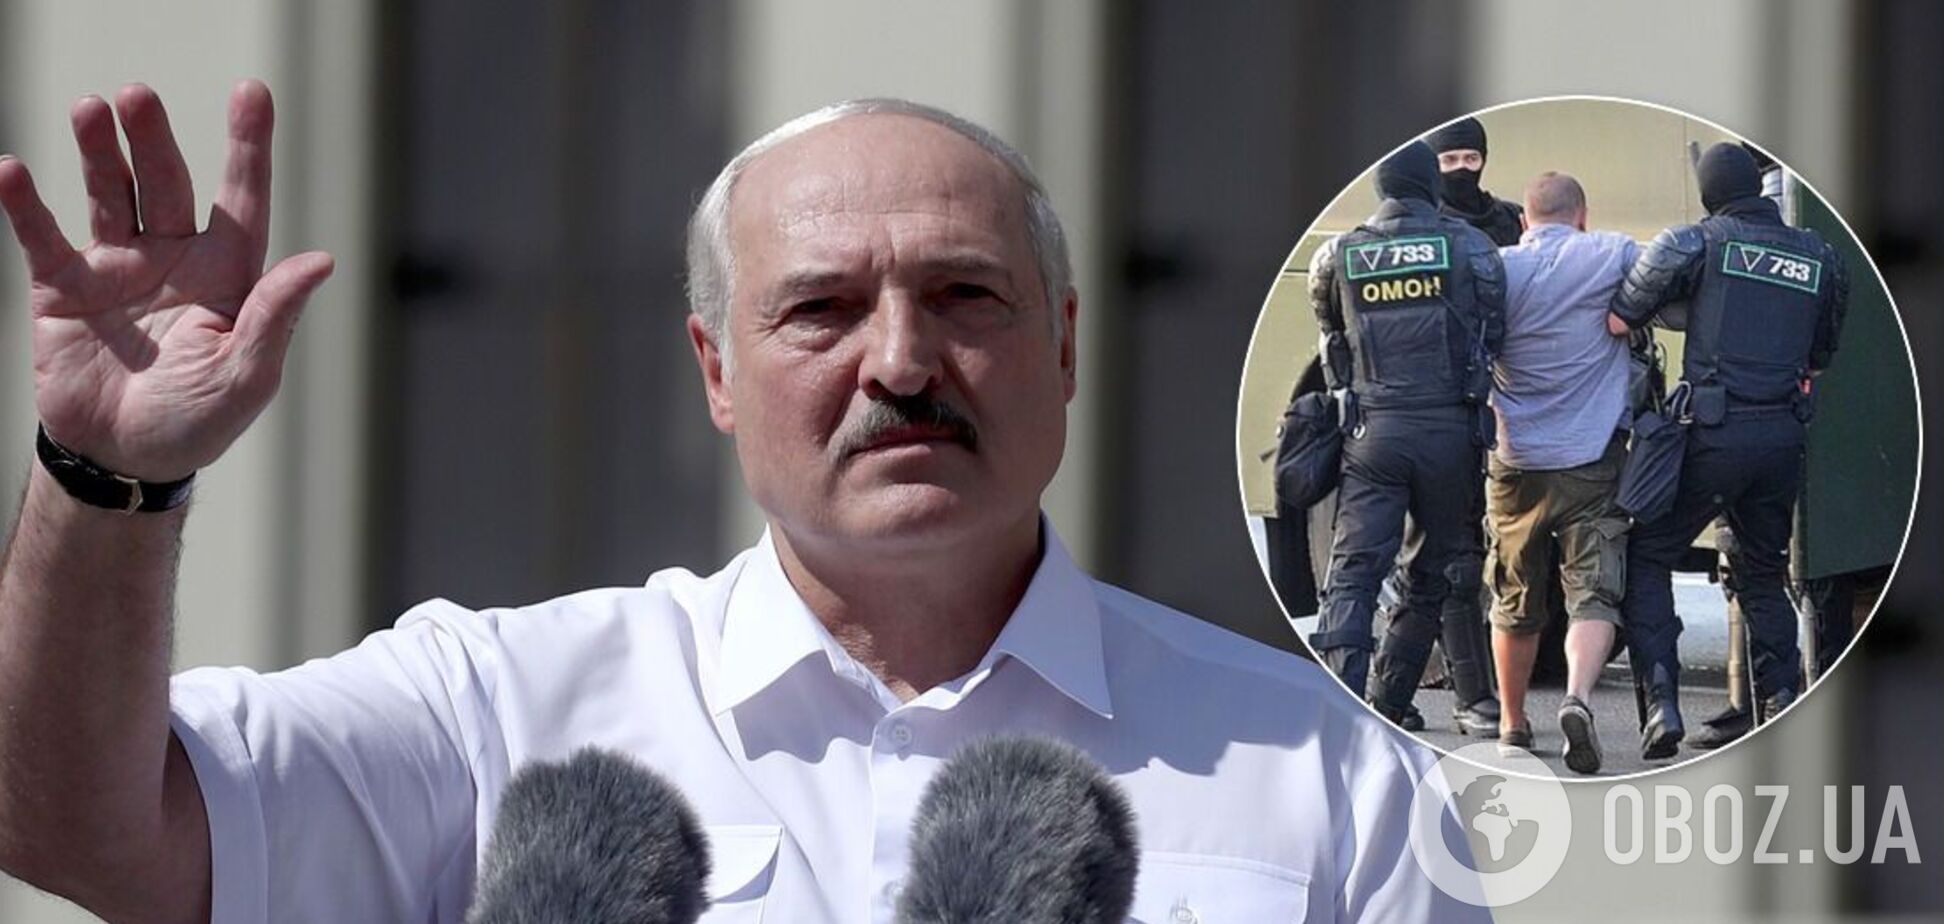 Александр Лукашенко наградил силовиков в разгар протестов